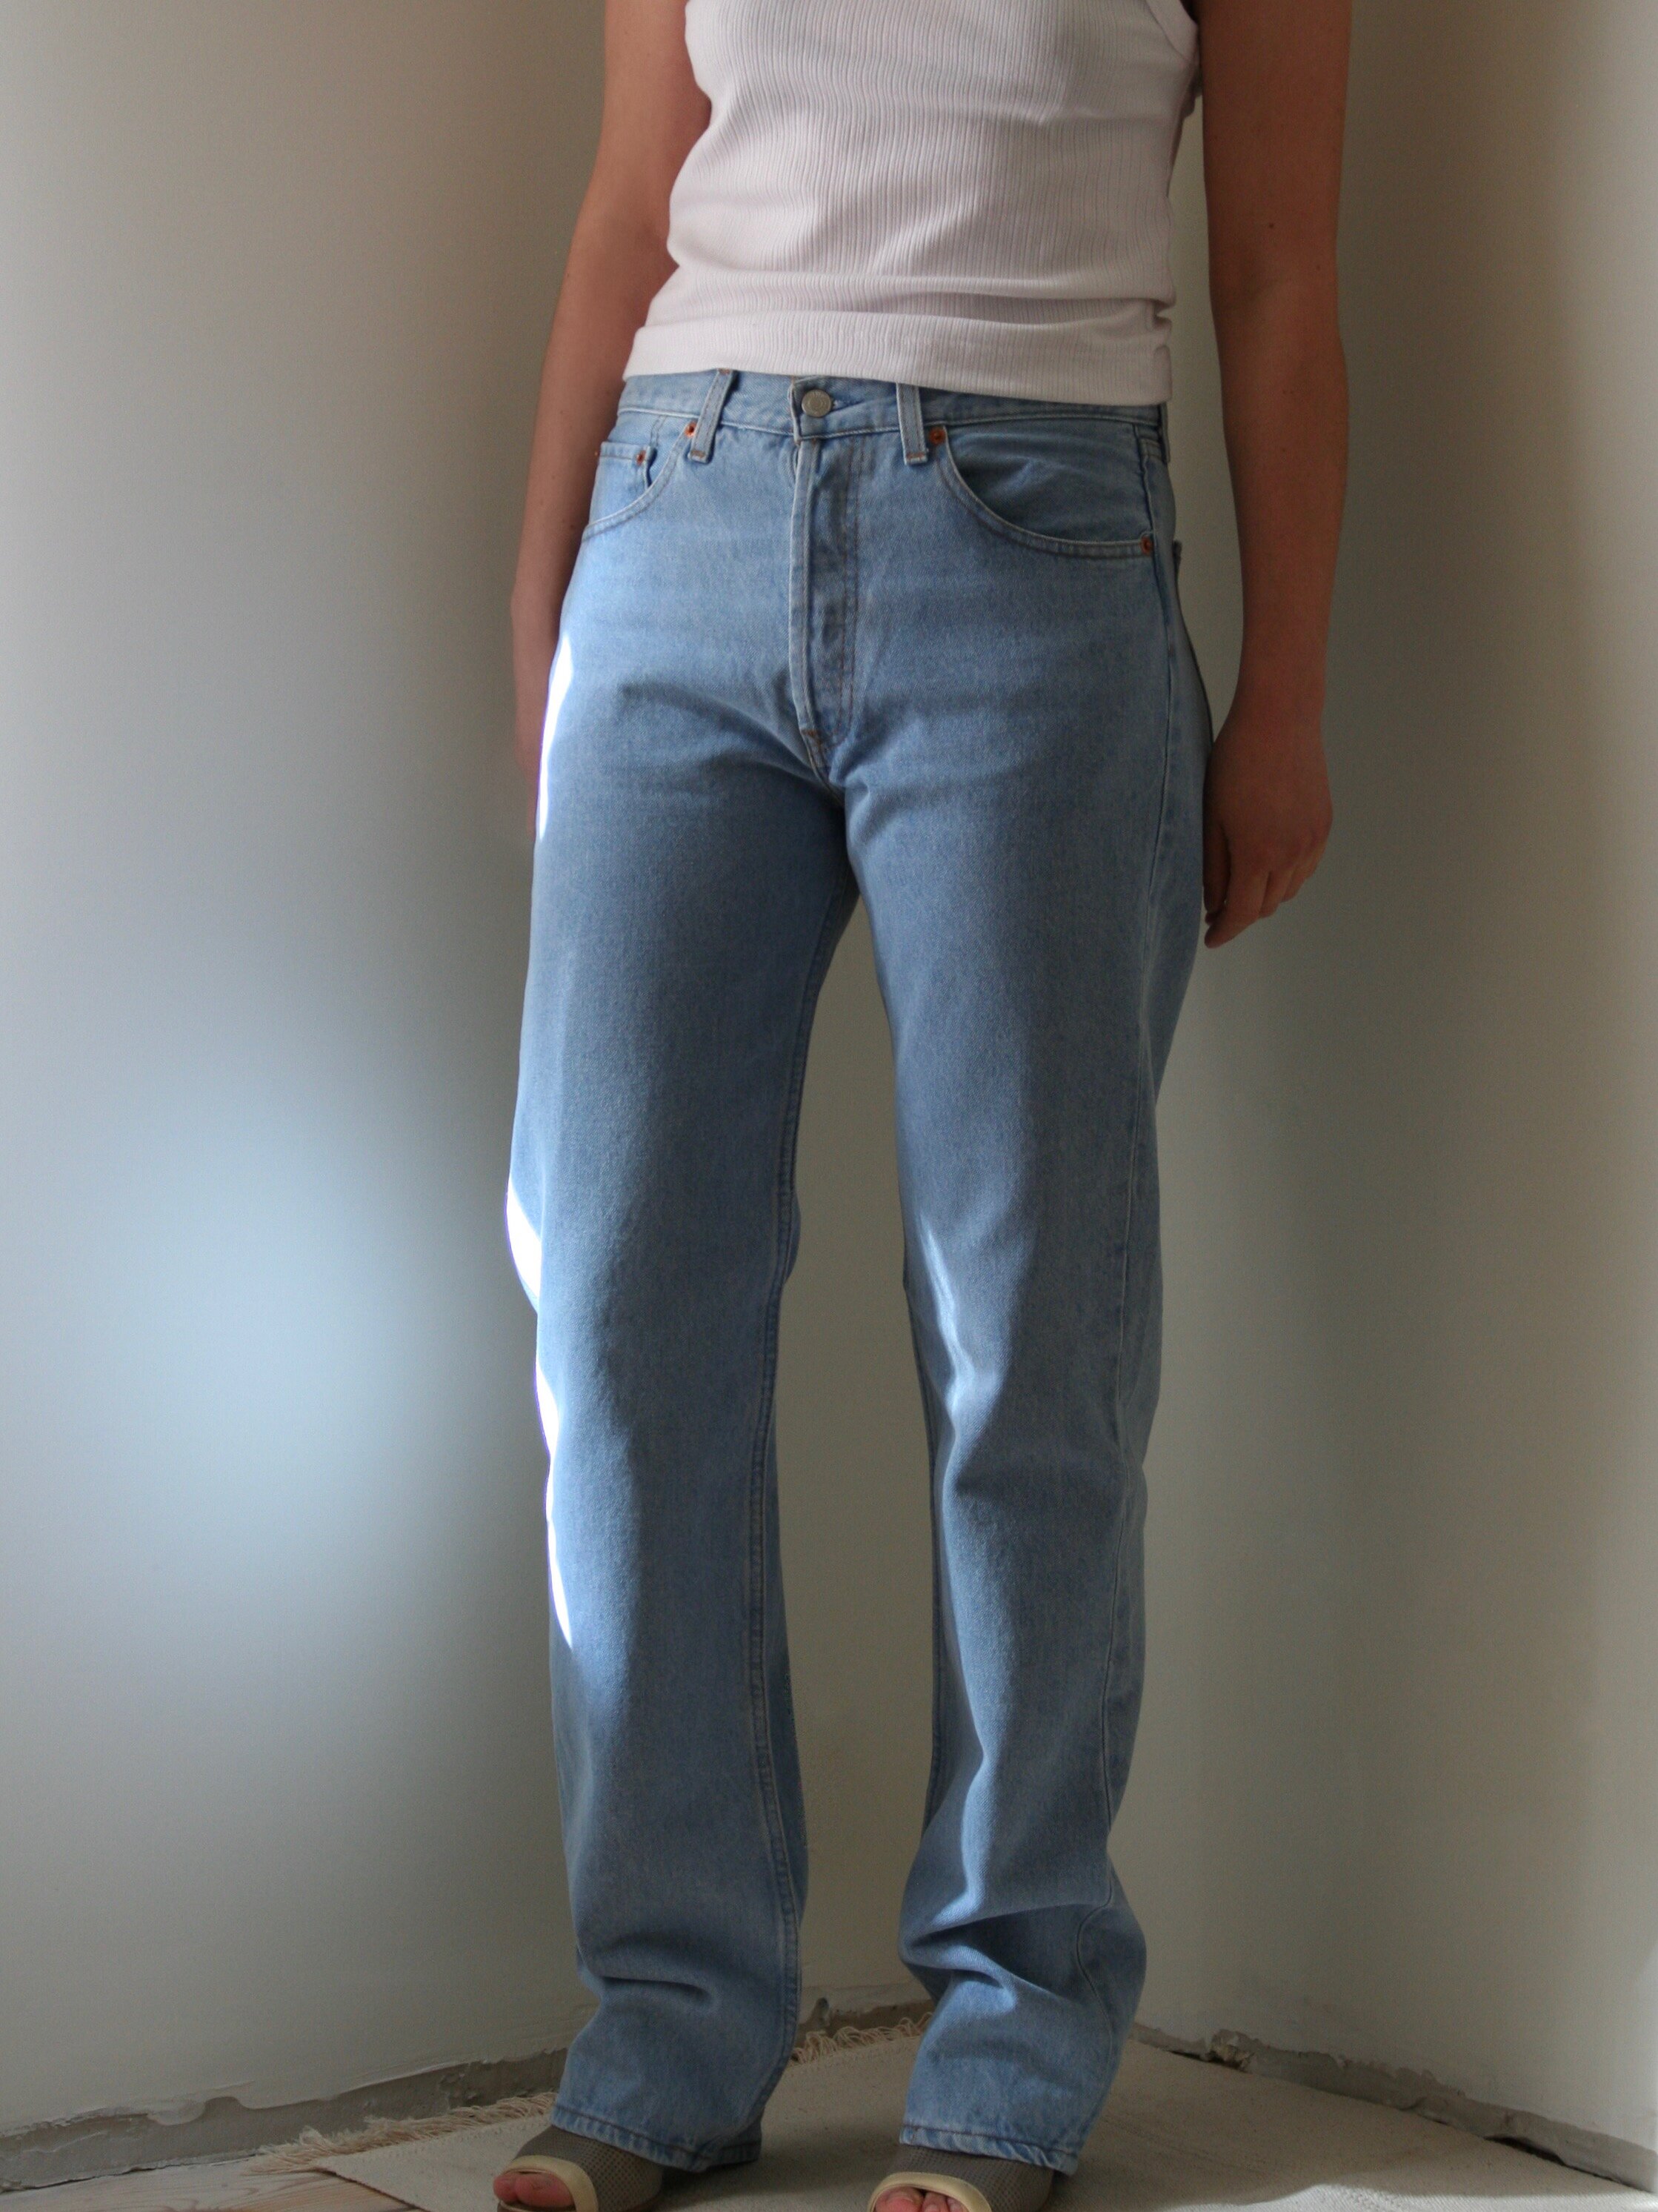 90s levi jeans